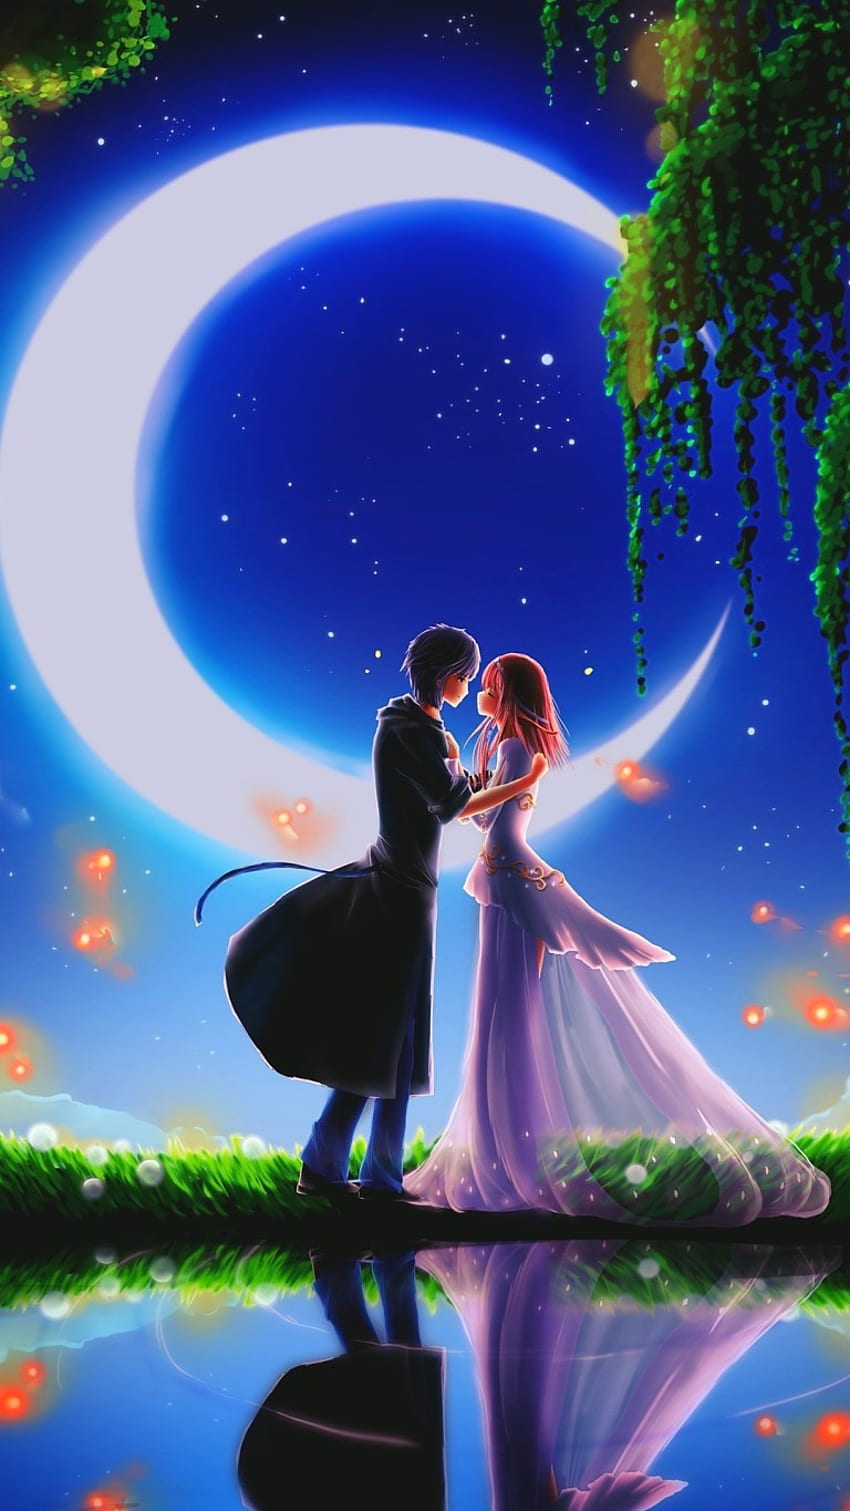 Phạm Thành Trung on Kimi no nawa, Holding Hands Romantic Anime HD ...